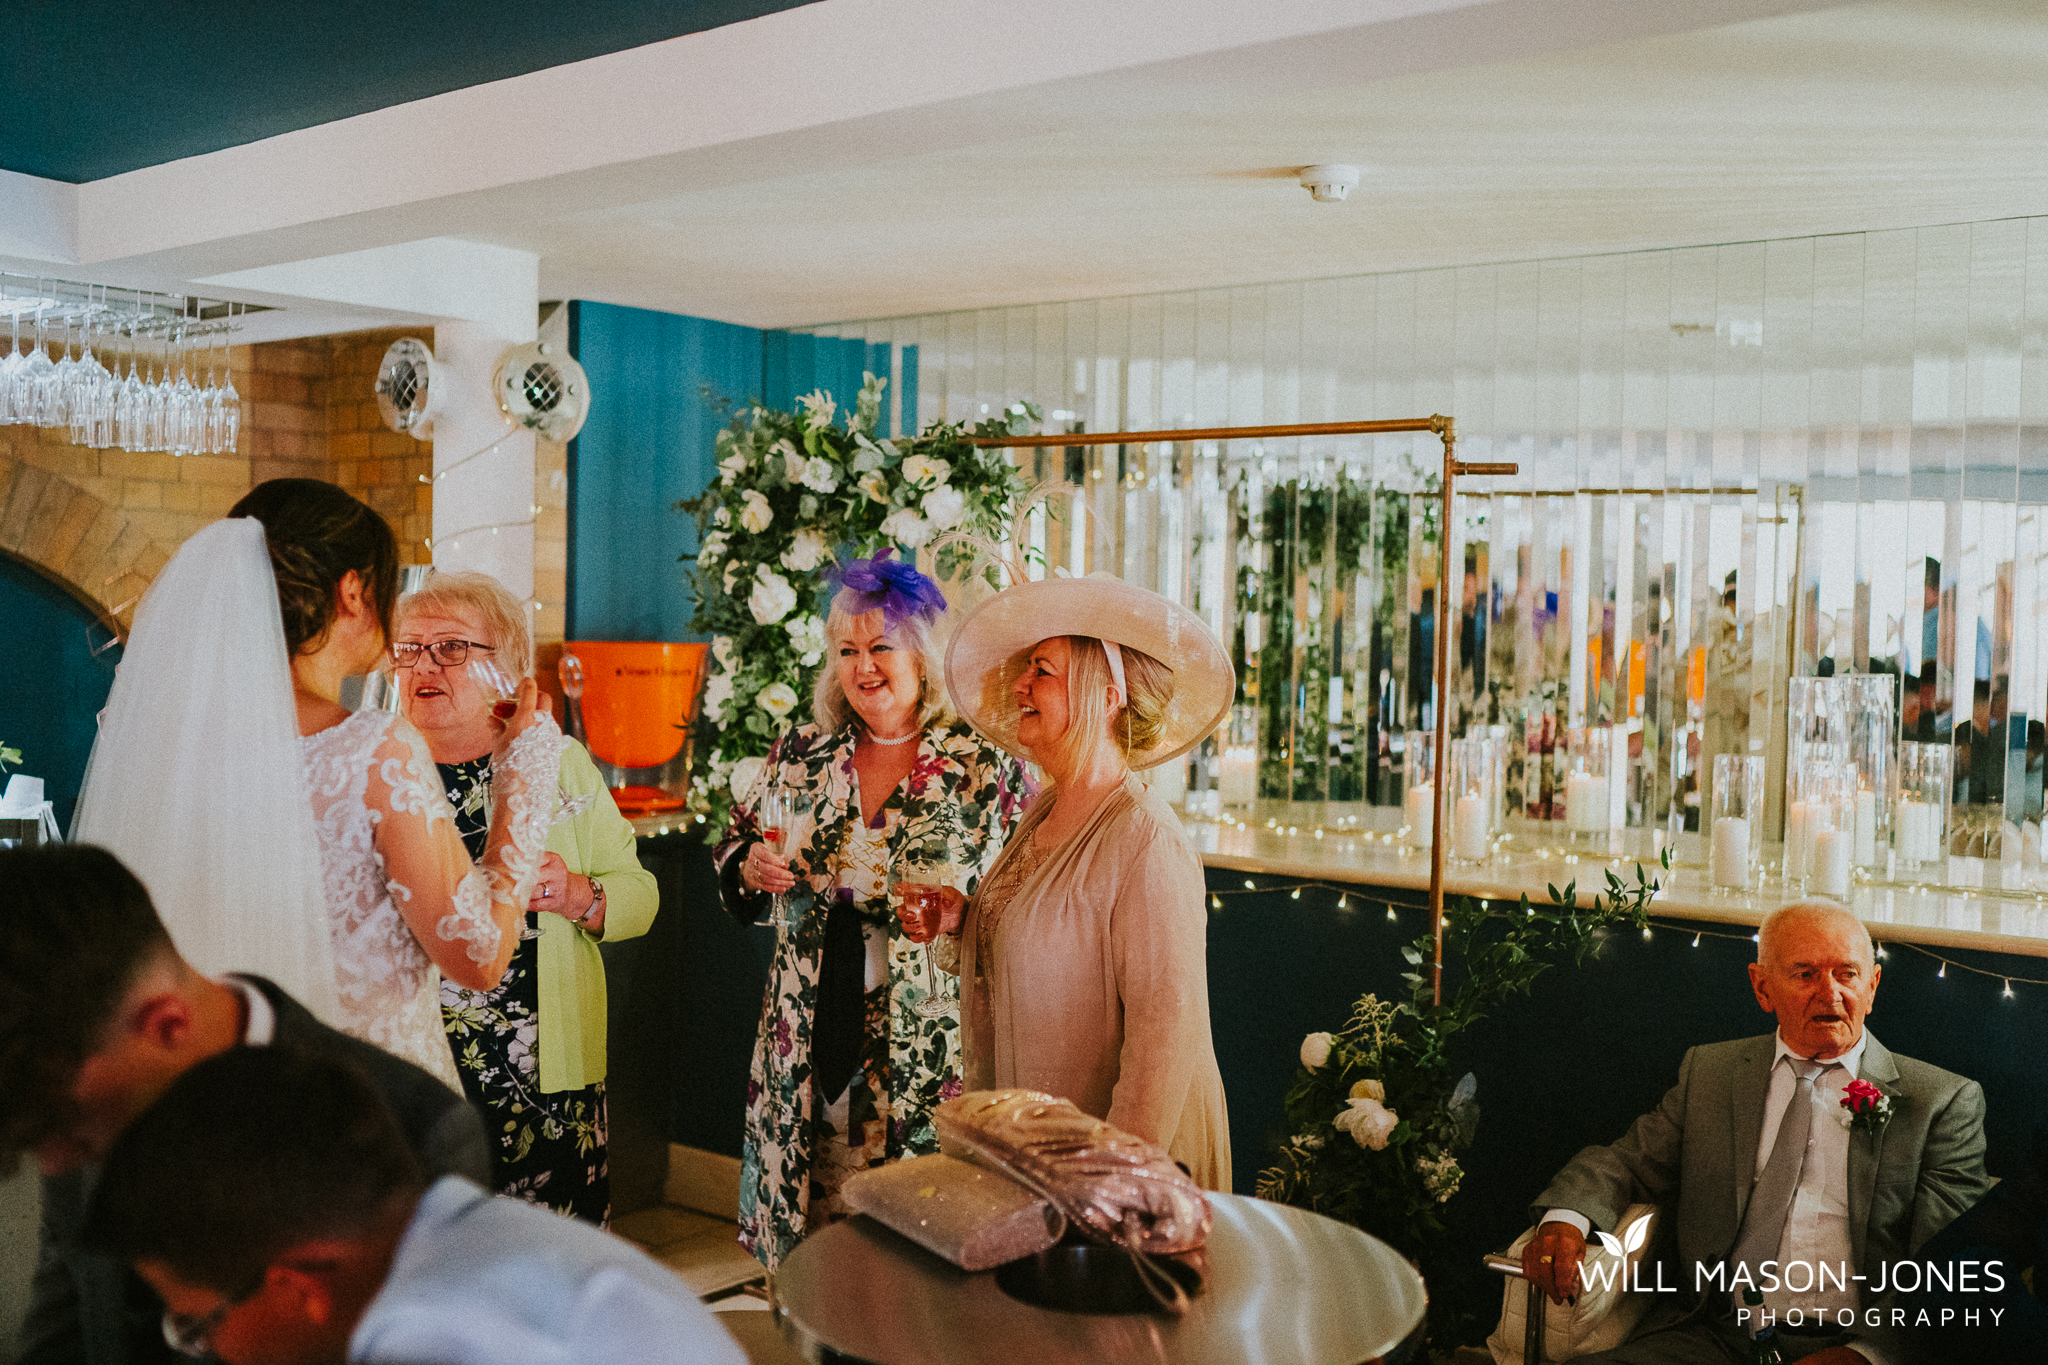  morgans hotel swansea wedding guests reception decorations 